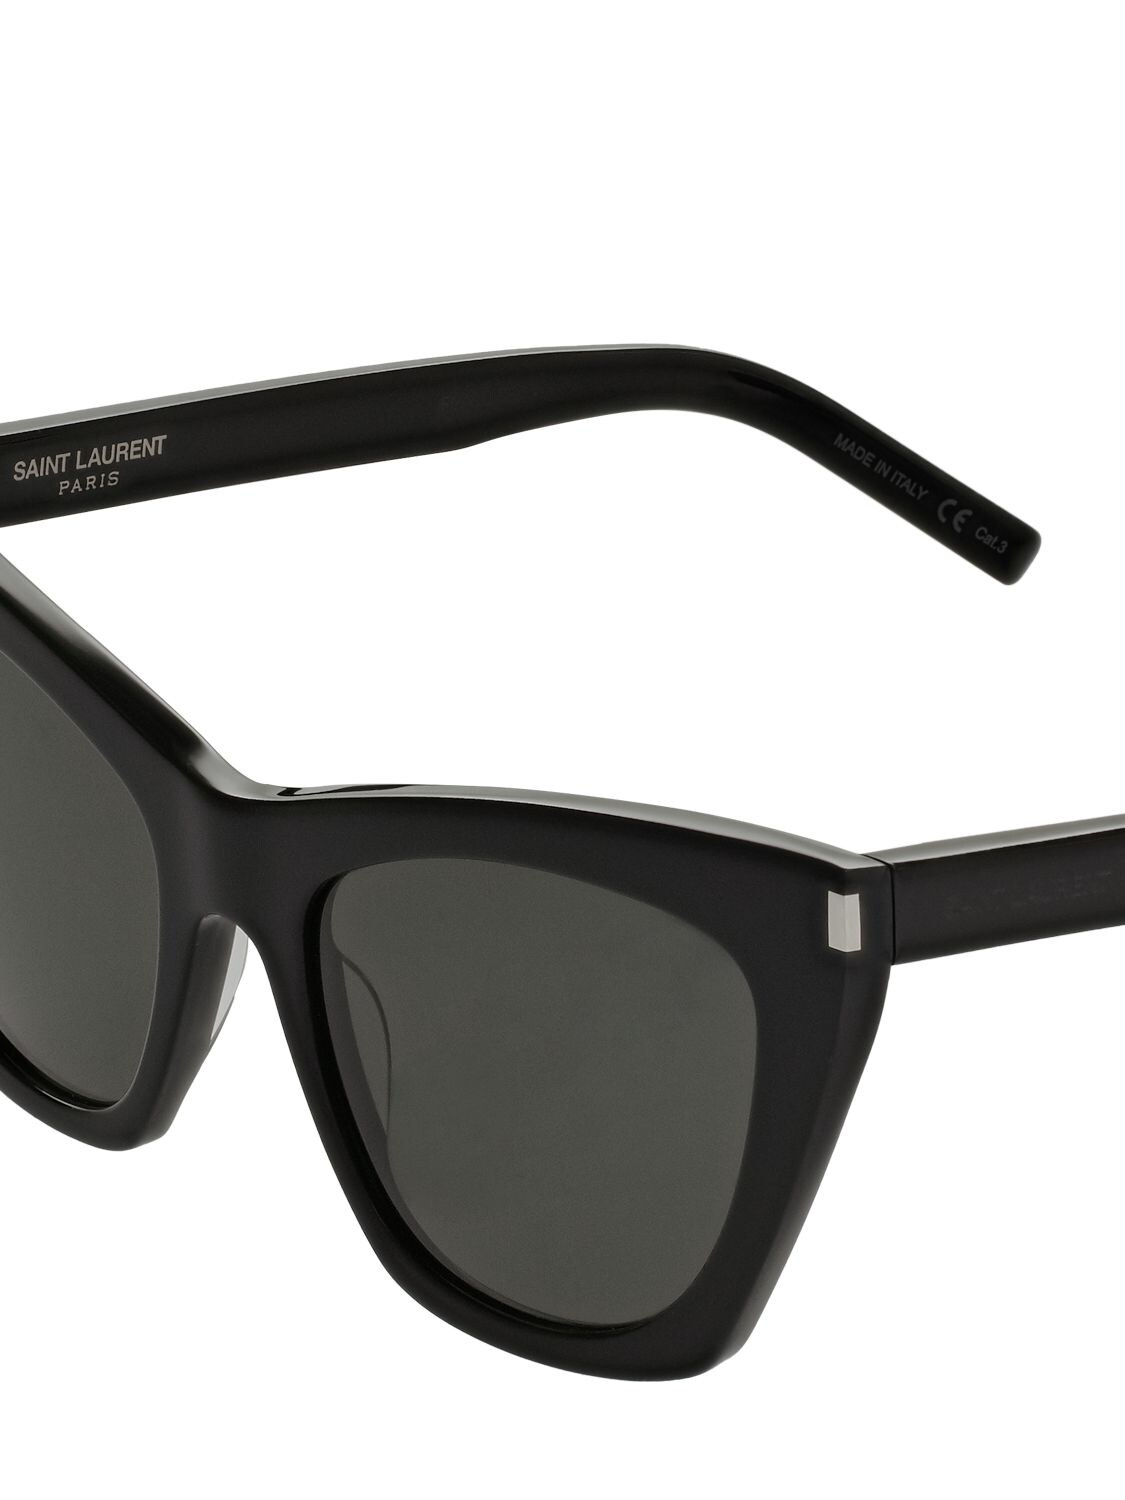 lenshop on X: Saint Laurent's black acetate Kate sunglasses are a